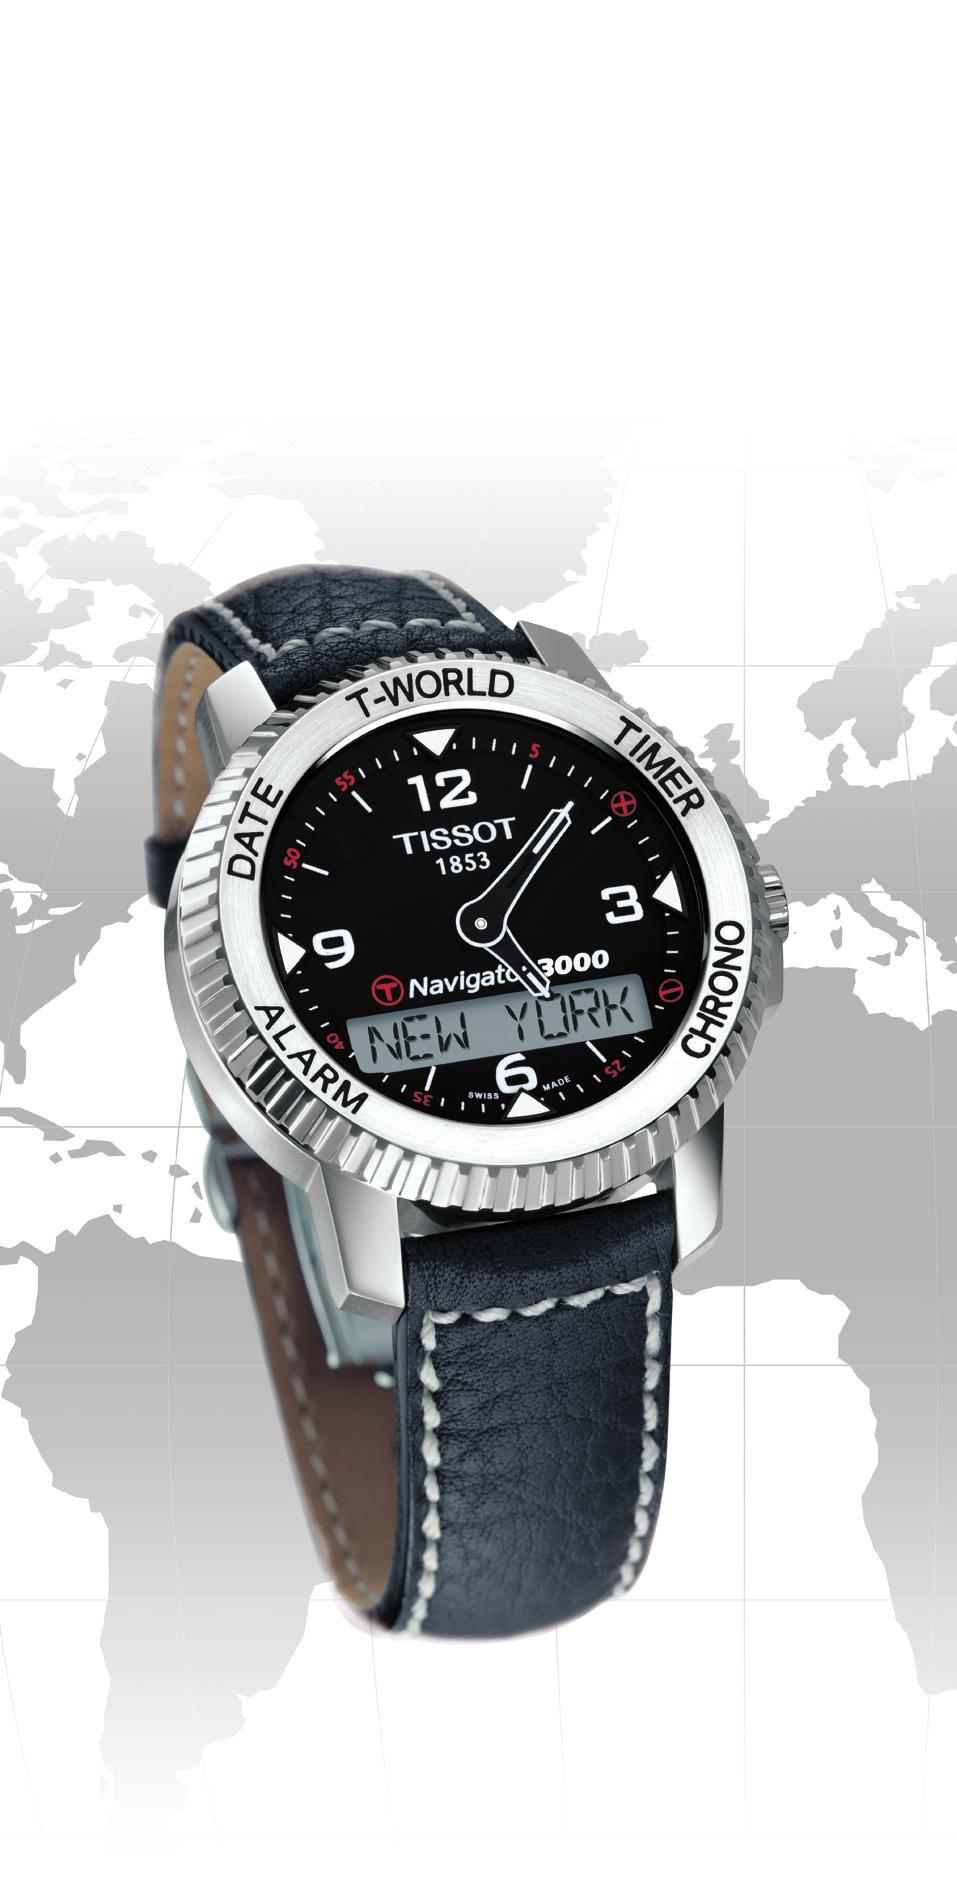 Navigator 3000 Instrukcja obsługi Gratulacje Dziękujemy Państwu za wybór zegarka marki TISSOT, jednej z najbardziej prestiżowych marek szwajcarskich na świecie.